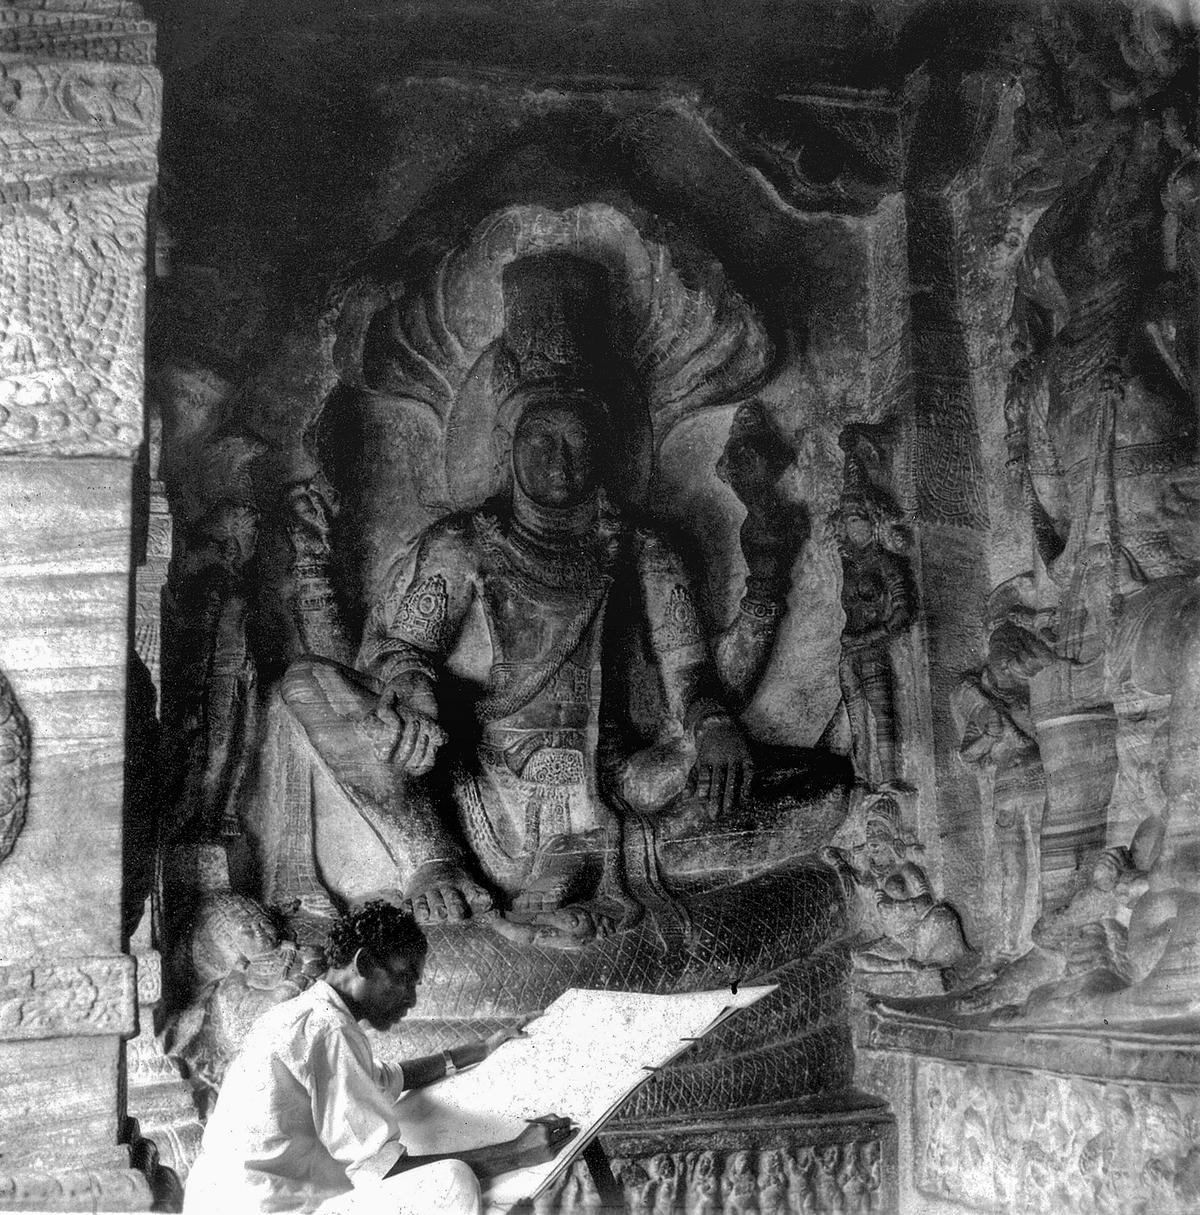 Maniyam sketching during his visit to Badami